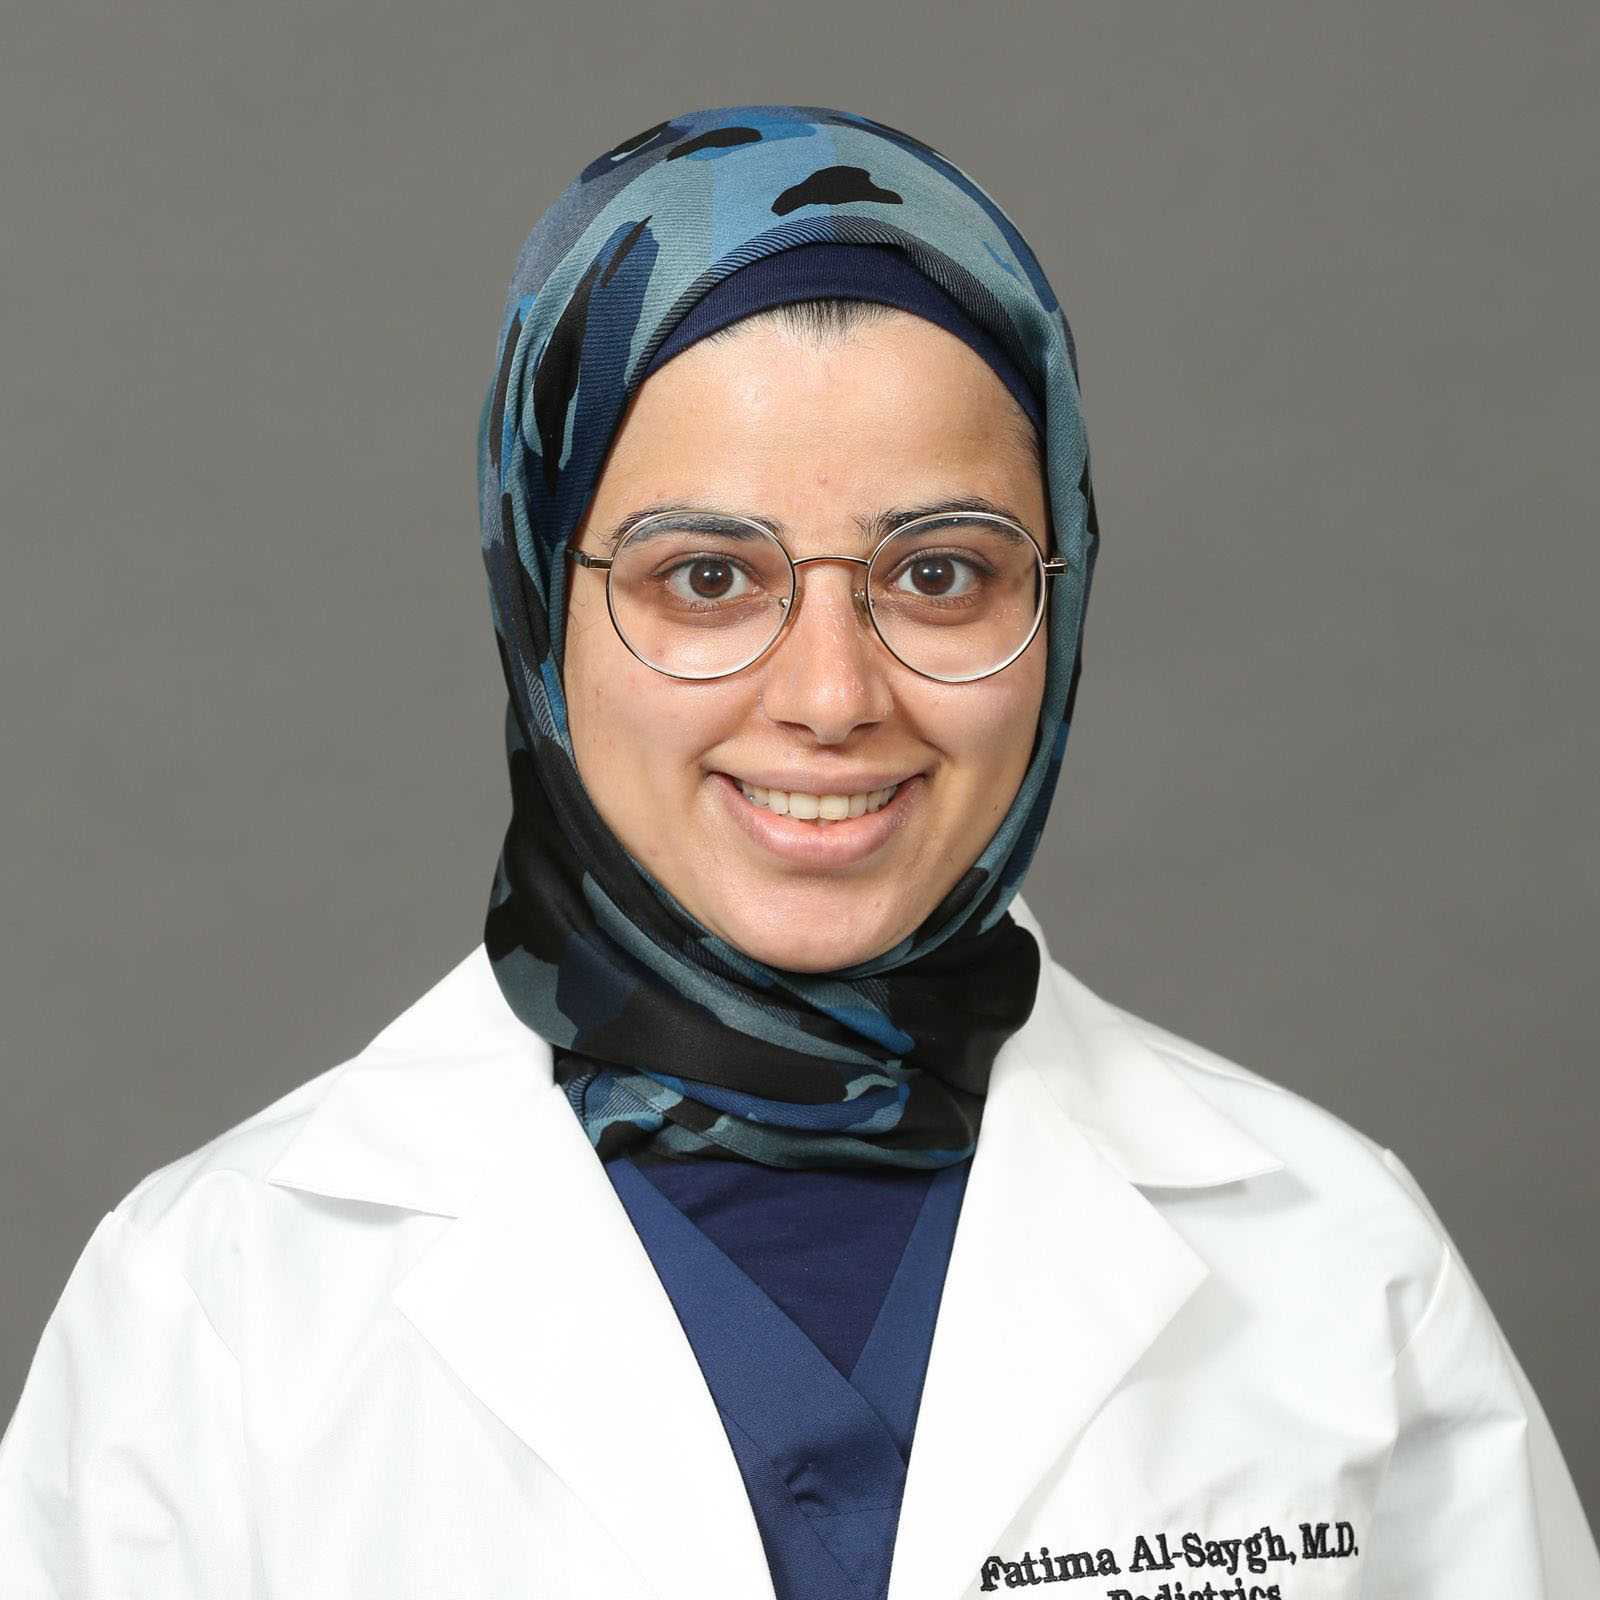 Fatima Al-Saygh, M.D.